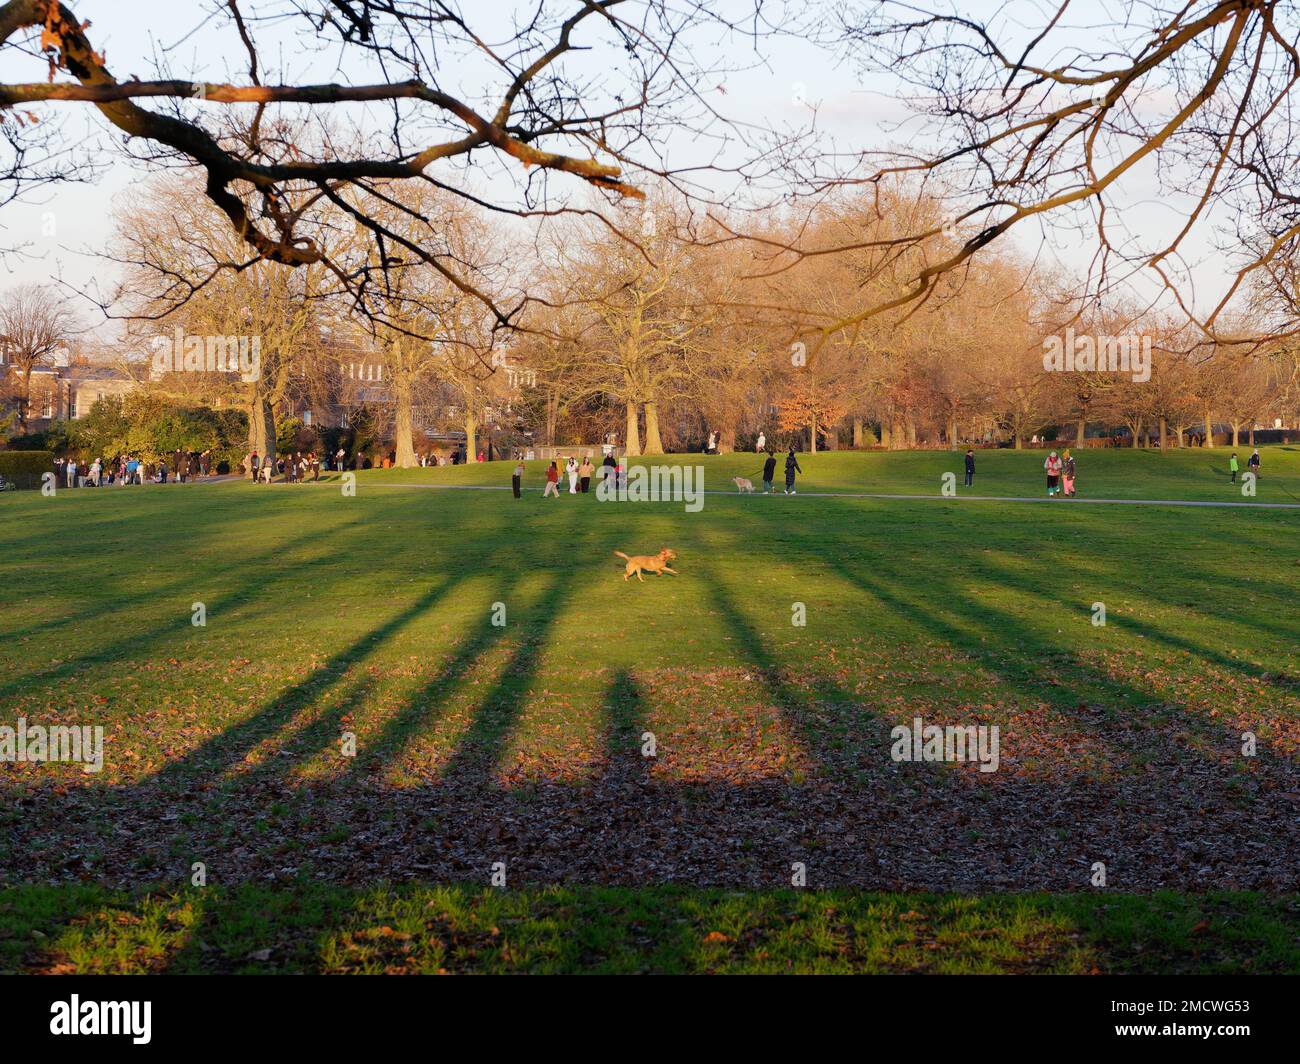 Gli alberi creano ombre in un giorno d'inverno a Greenwich Park mentre un cane scorre sull'erba. Londra Inghilterra. Foto Stock